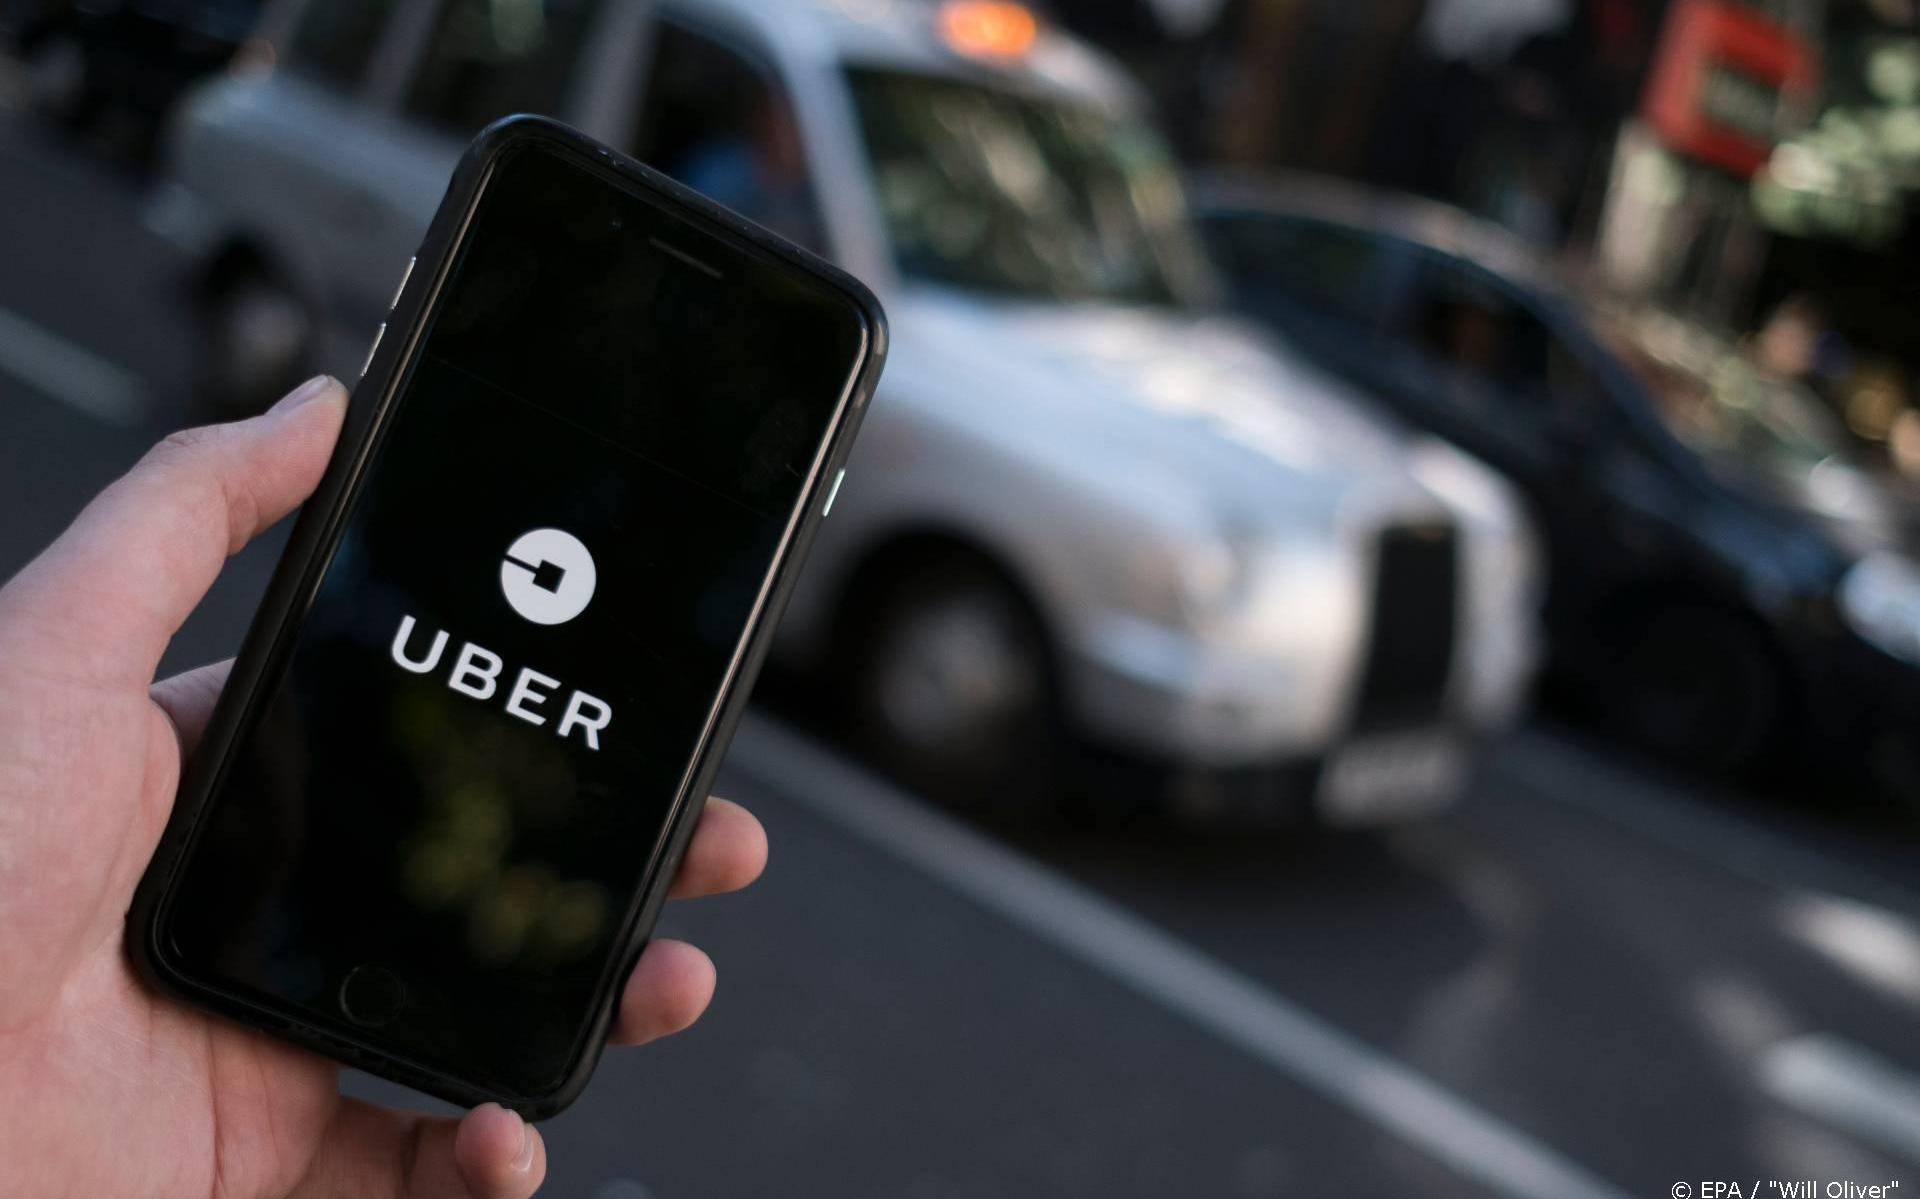 Oud-veiligheidsbaas Uber aangeklaagd om stilhouden hack